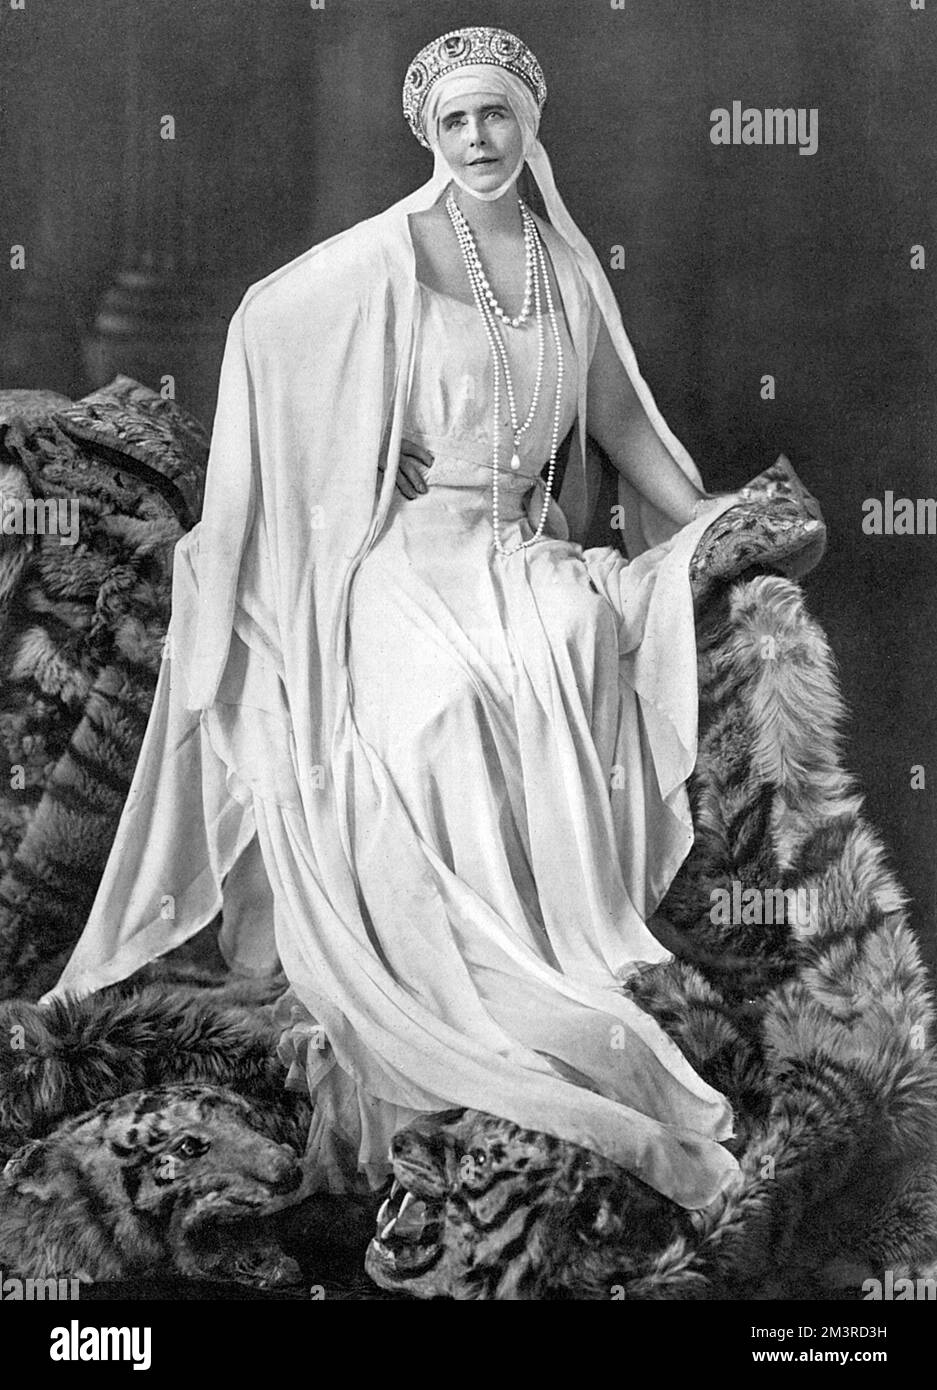 Regina Maria di Romania (1875 - 1938), la consorte di Re Ferdinando i di Romania. Figlia del principe Alfred, duca di Edimburgo e quindi nipote della regina Vittoria. La propensione di Marie per il dramma e il vestito flamboyant è riflessa in questo ritratto in cui posa su due tappeti di pelle di tigre. Data: 1931 Foto Stock